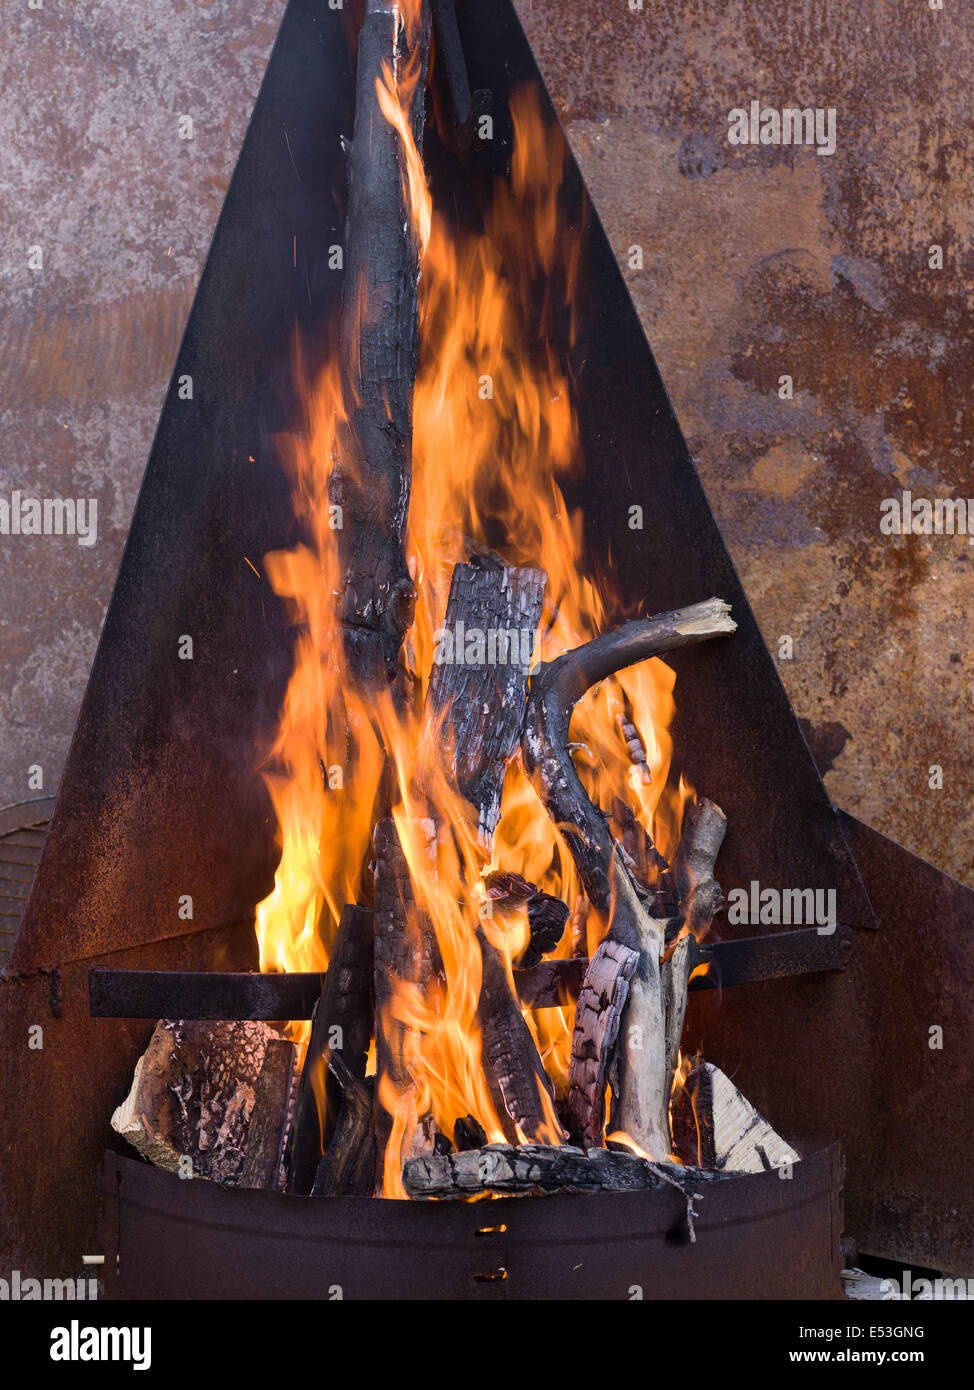 fer en métal cheminée cheminée place barbecue de jardin brûlée de bois chaud gravure Banque D'Images